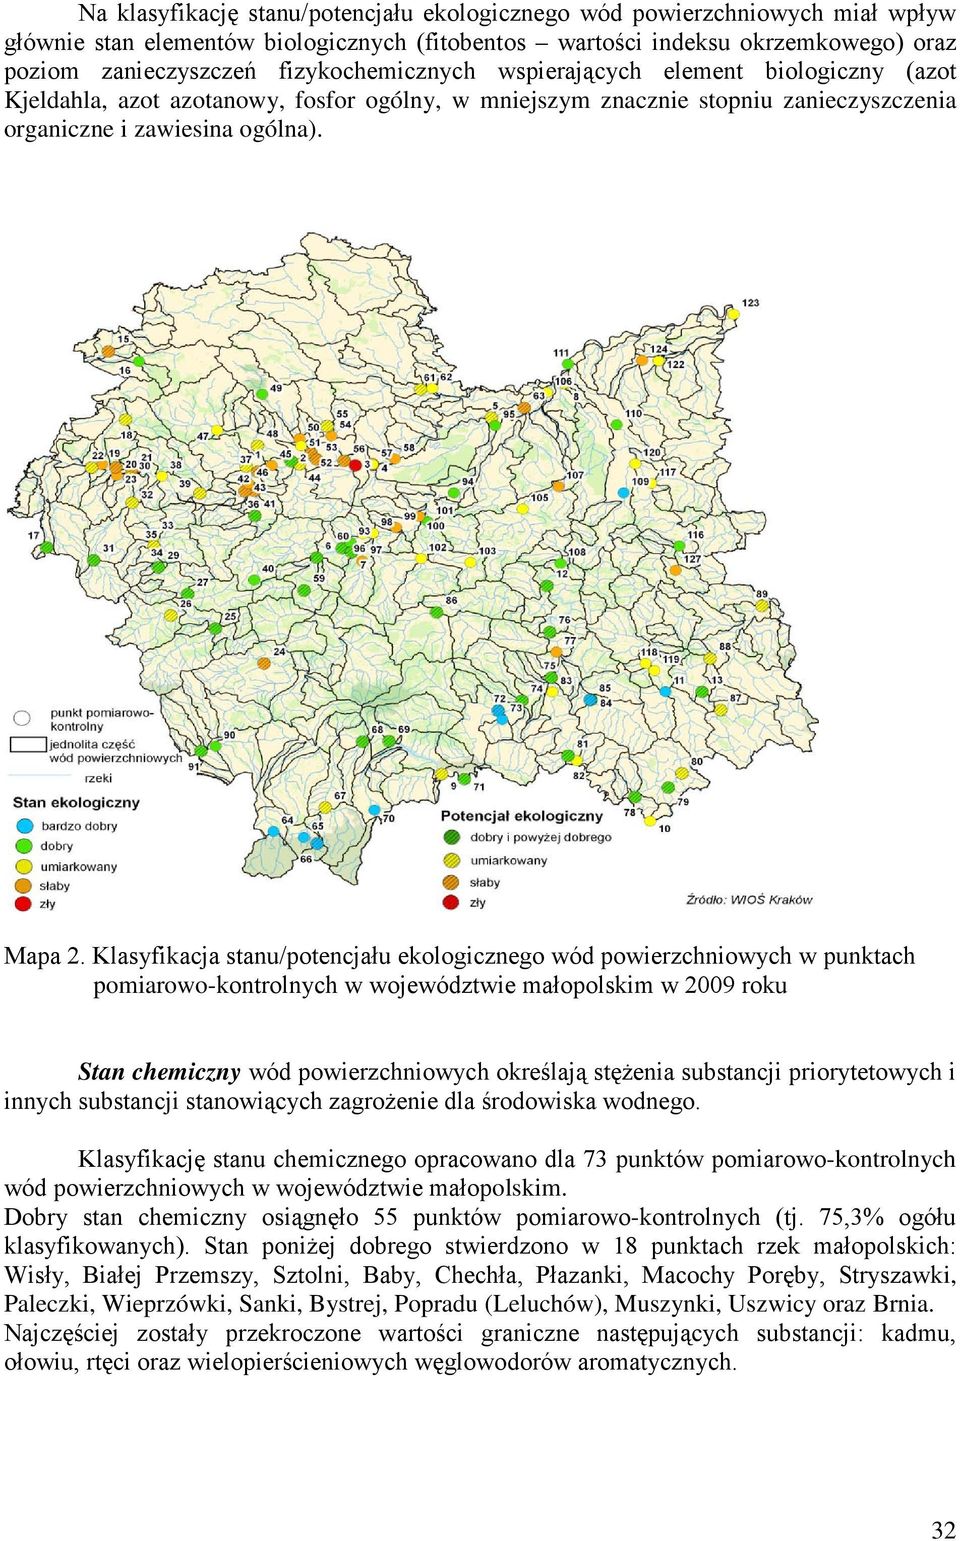 Klasyfikacja stanu/potencjału ekologicznego wód powierzchniowych w punktach pomiarowo-kontrolnych w województwie małopolskim w 2009 roku Stan chemiczny wód powierzchniowych określają stężenia